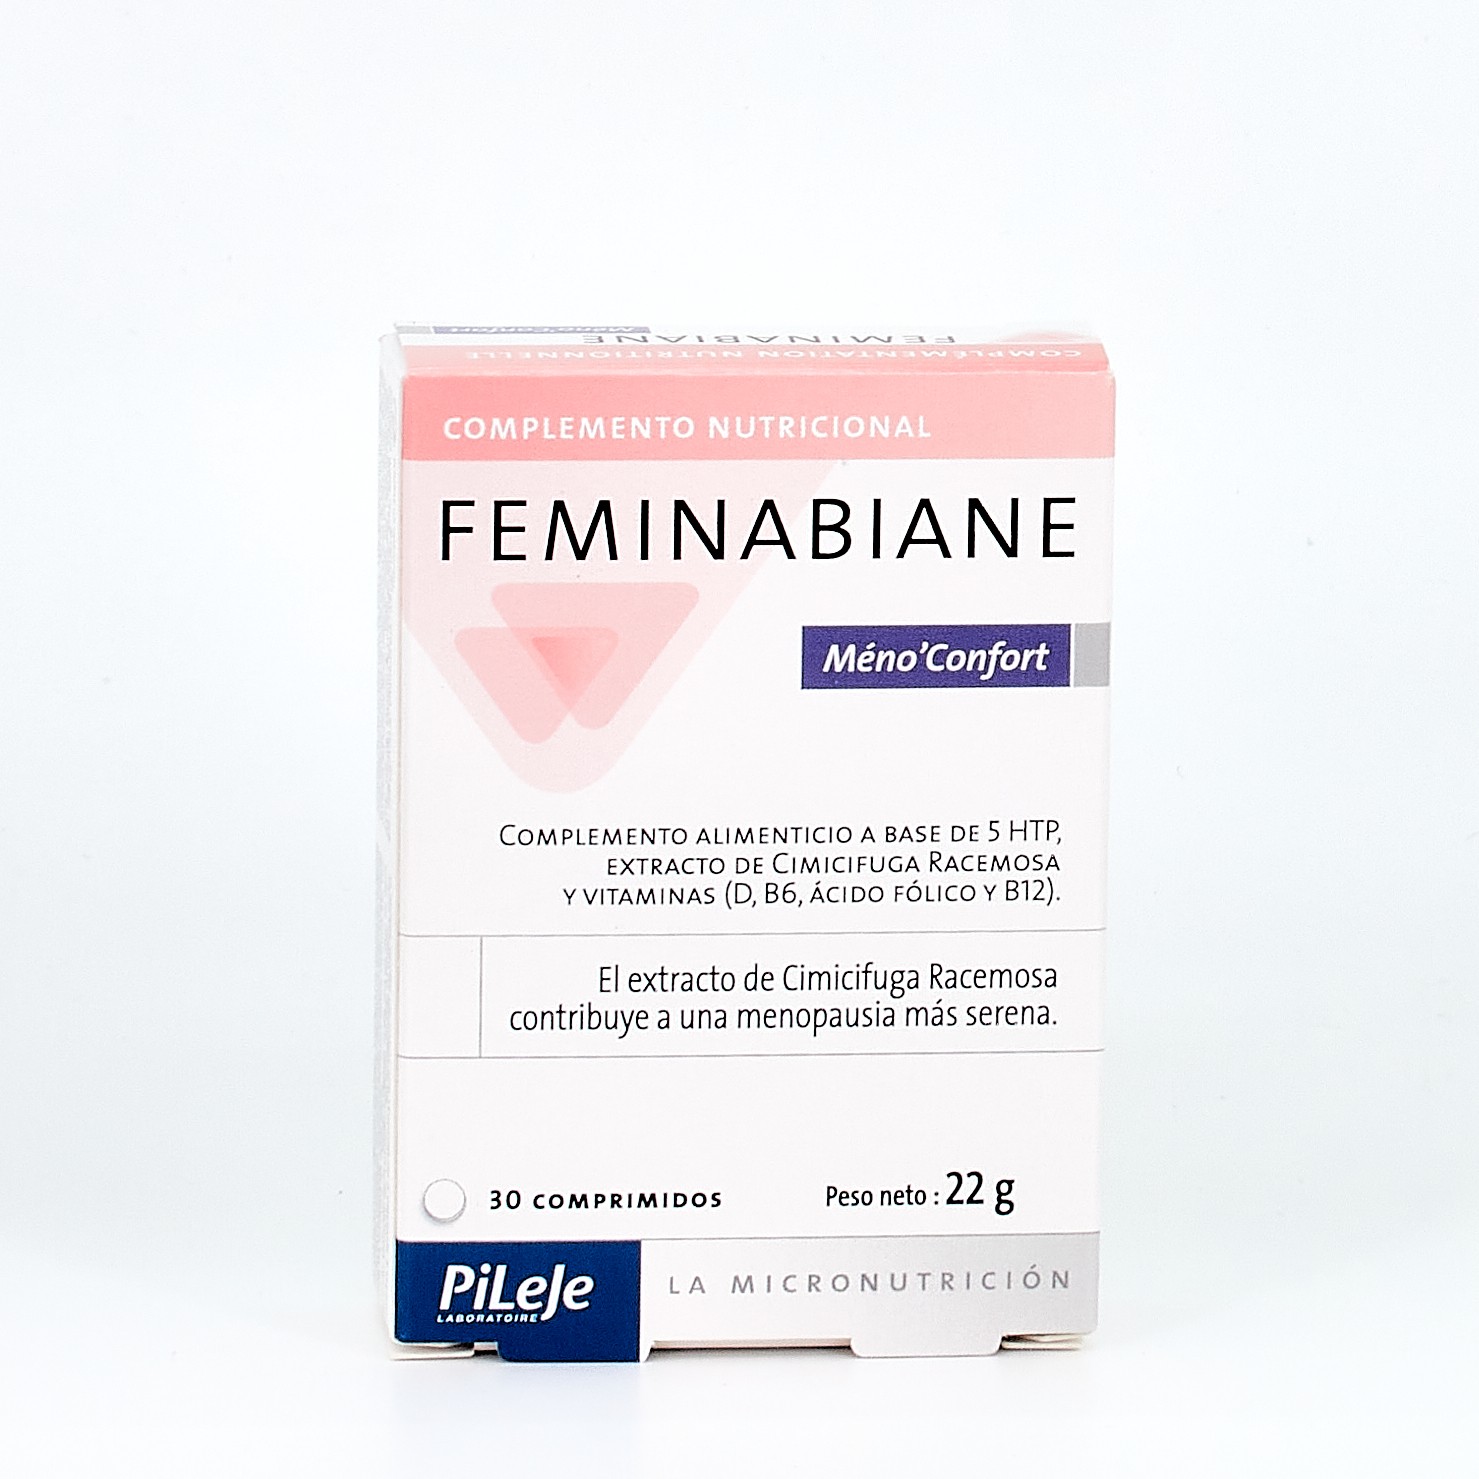 Pileje Feminabiane Meno Confort, 30 comprimidos.